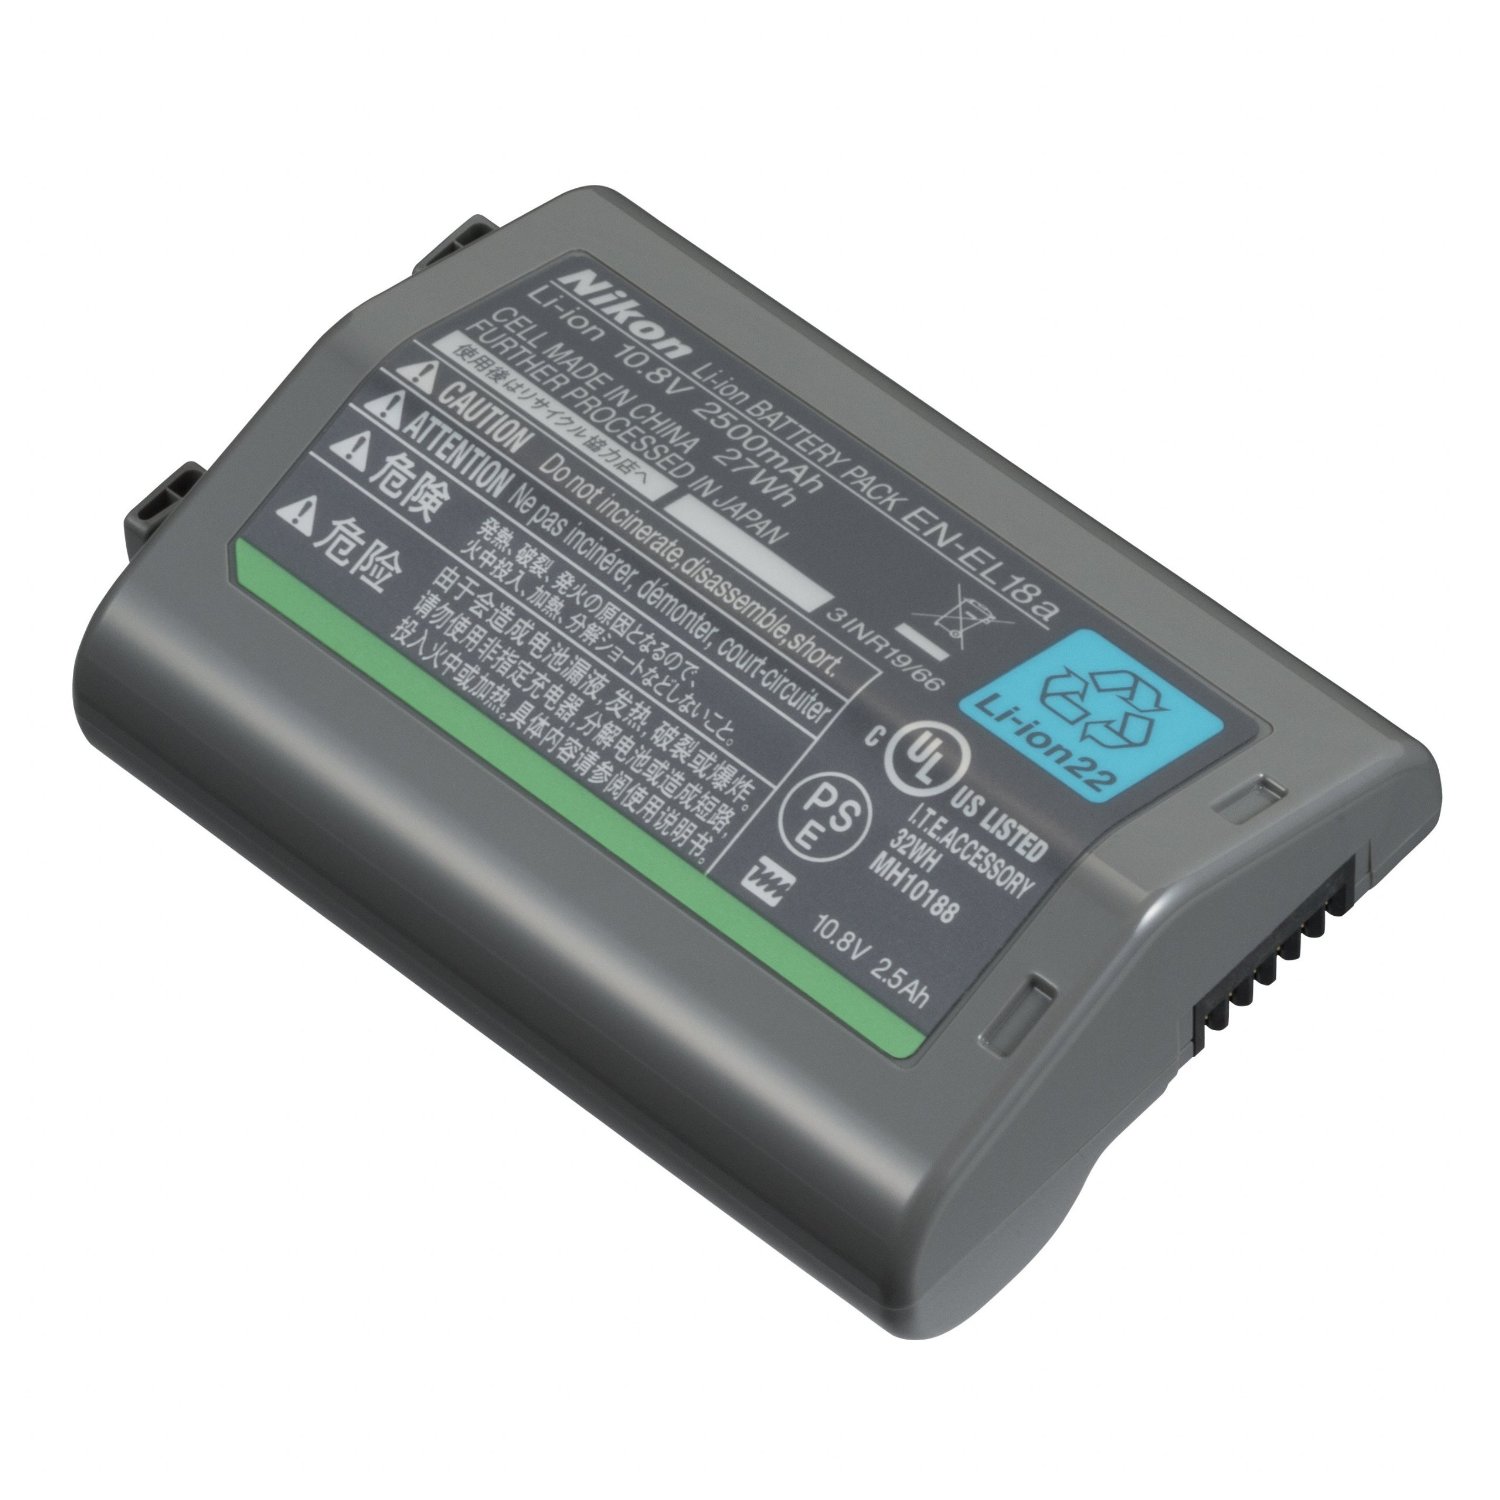 Nikon EN-EL18a Rechargeable Lithium-ion Battery Pack for D4S